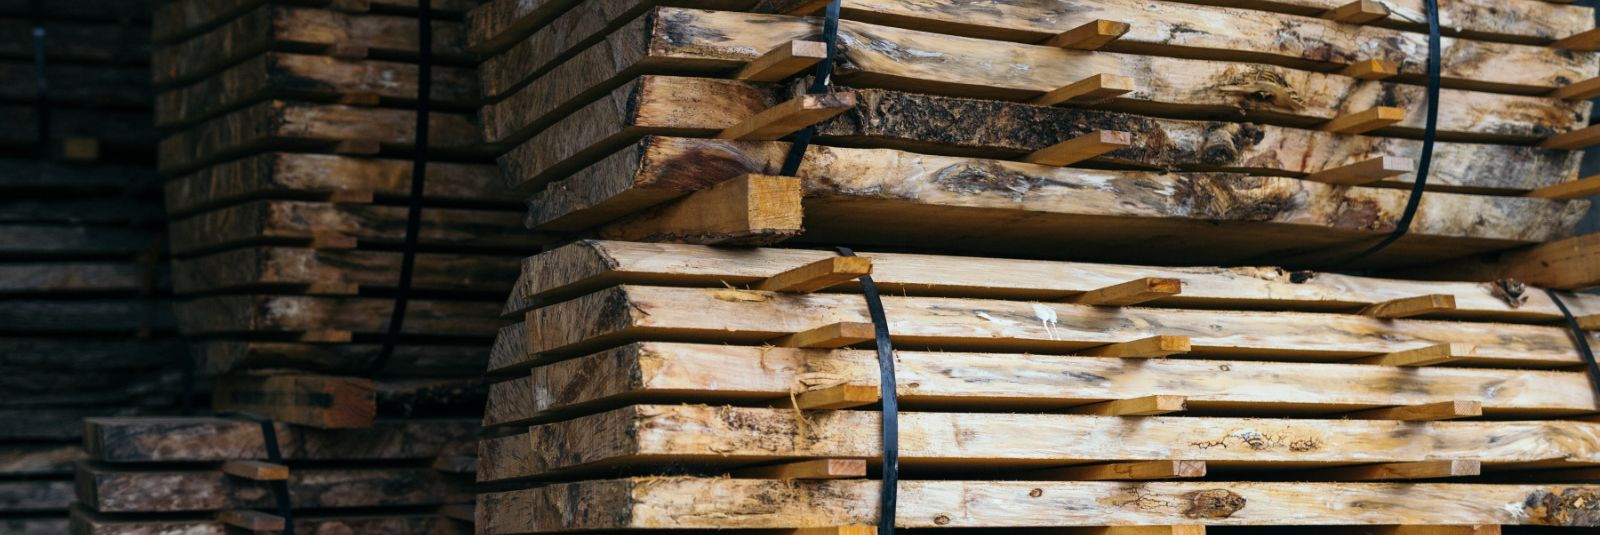 Saare Ehituspuit on uhke pakkudes kvaliteetseid poolprusse ja erimõõtudes puitmaterjale, mis vastavad palkmajaehitajate kõrgetele nõudmistele. Palkmajaehitus on